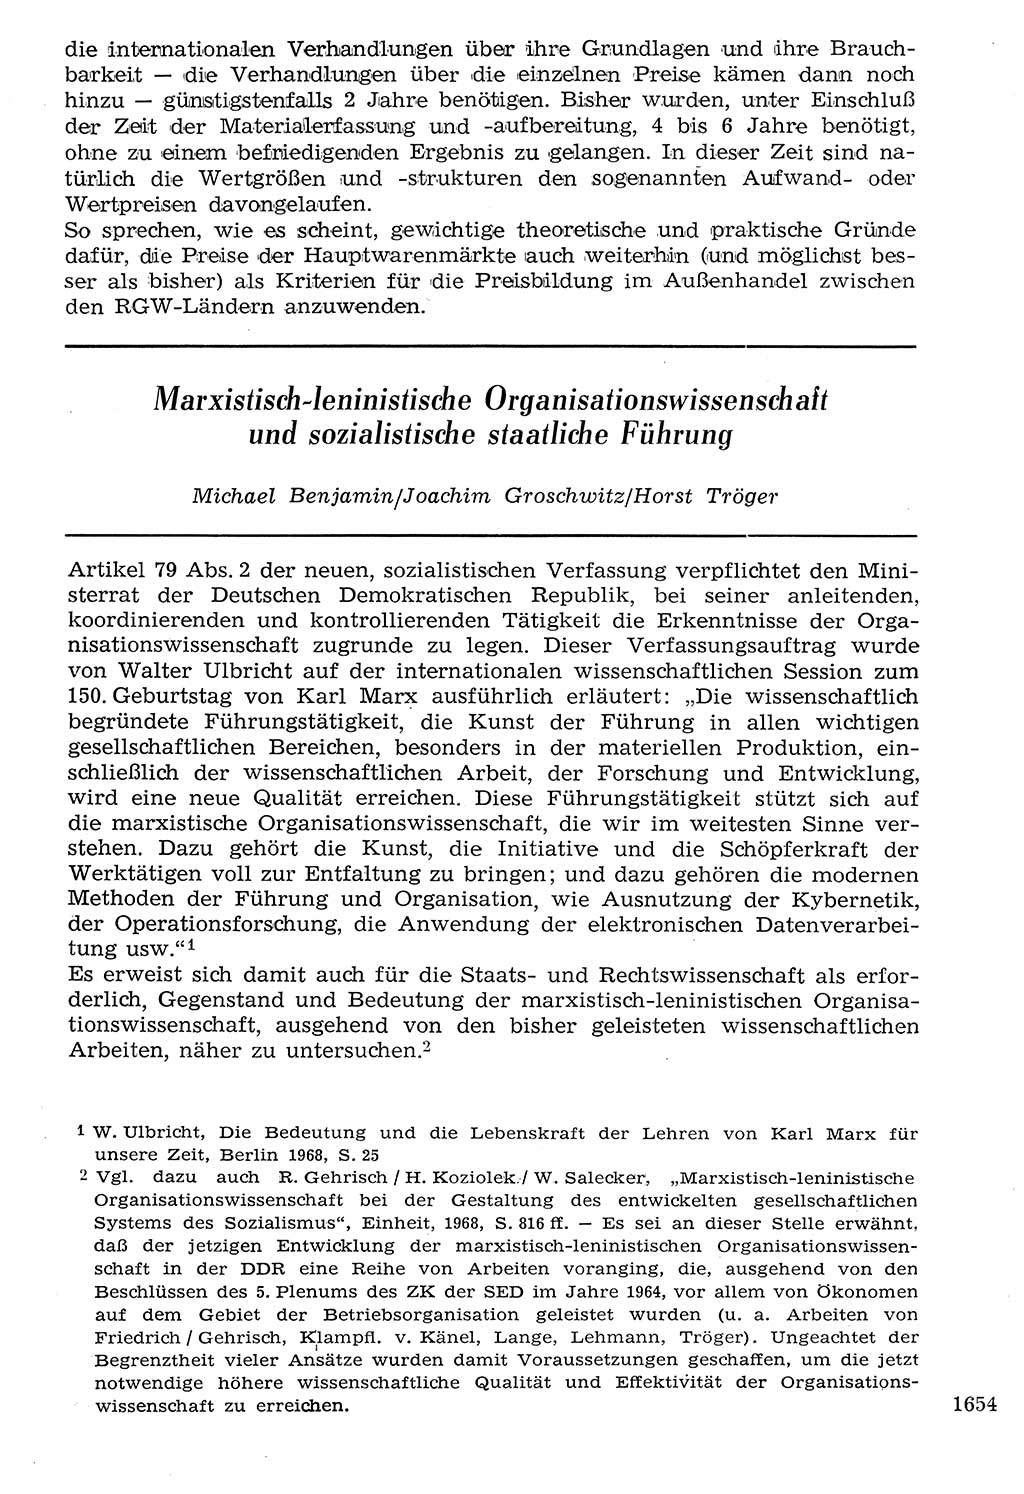 Staat und Recht (StuR), 17. Jahrgang [Deutsche Demokratische Republik (DDR)] 1968, Seite 1654 (StuR DDR 1968, S. 1654)